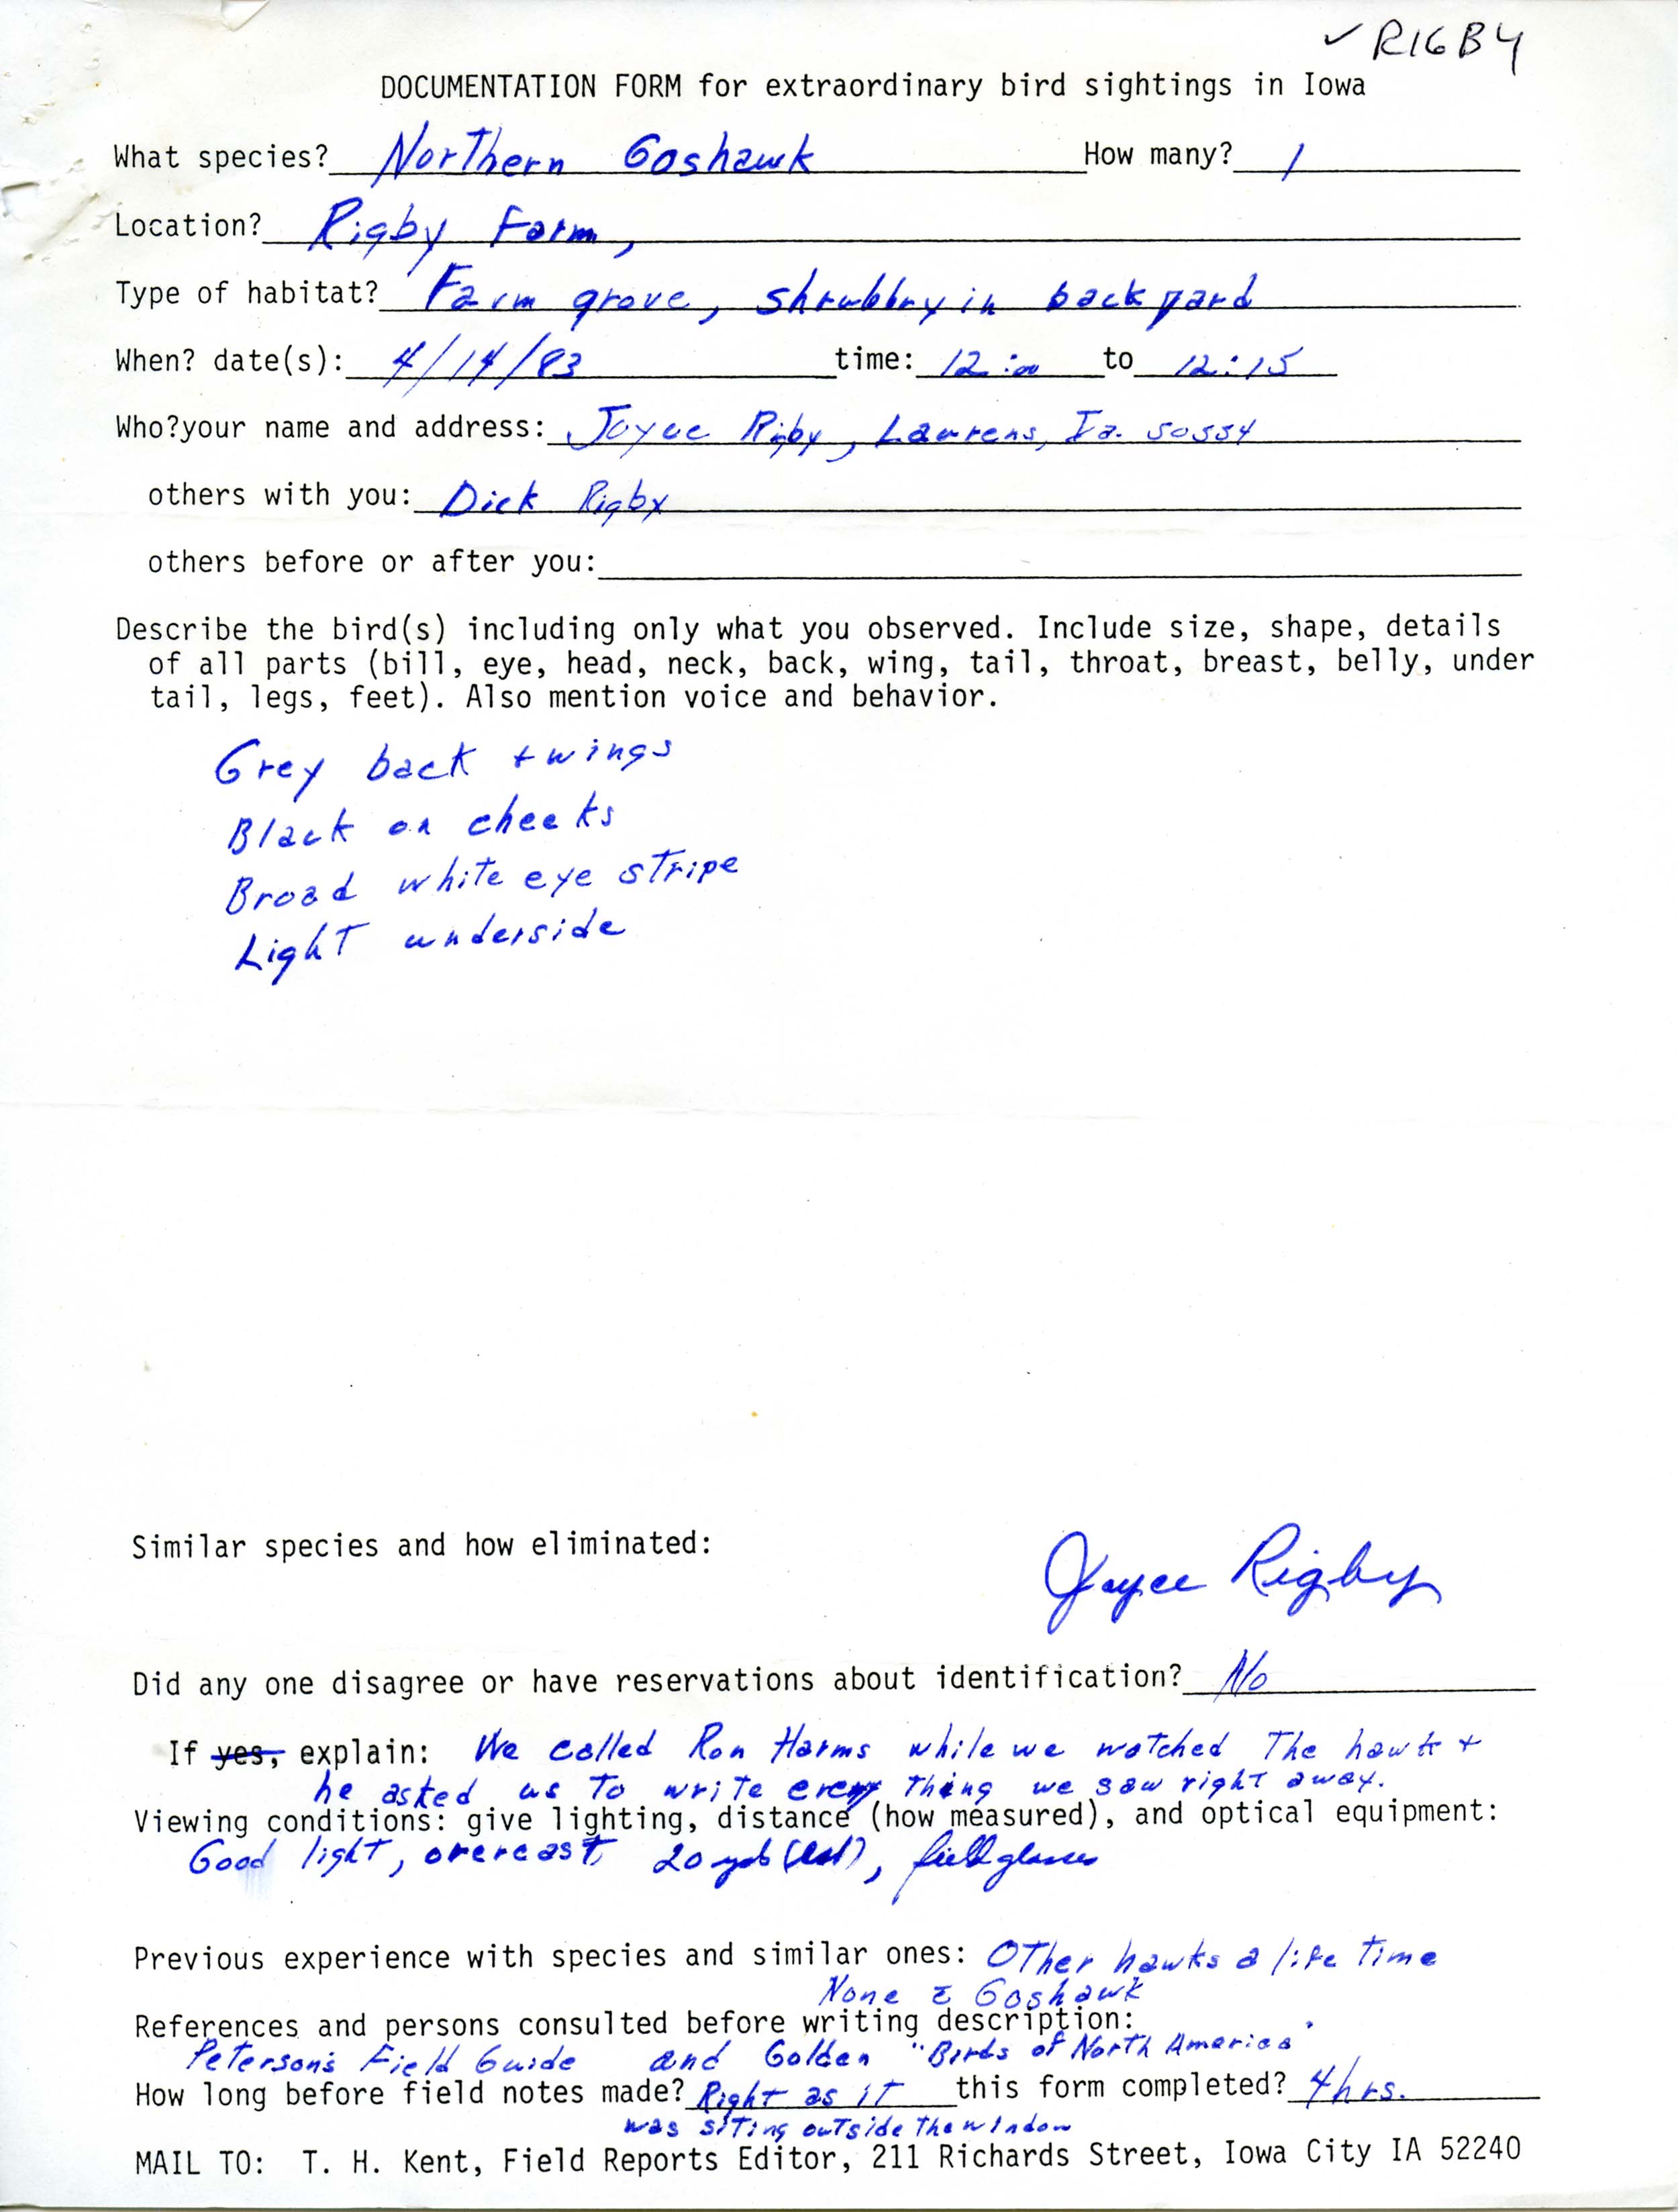 Rare bird documentation form for Northern Goshawk at Rigby Farm in Laurens, 1983